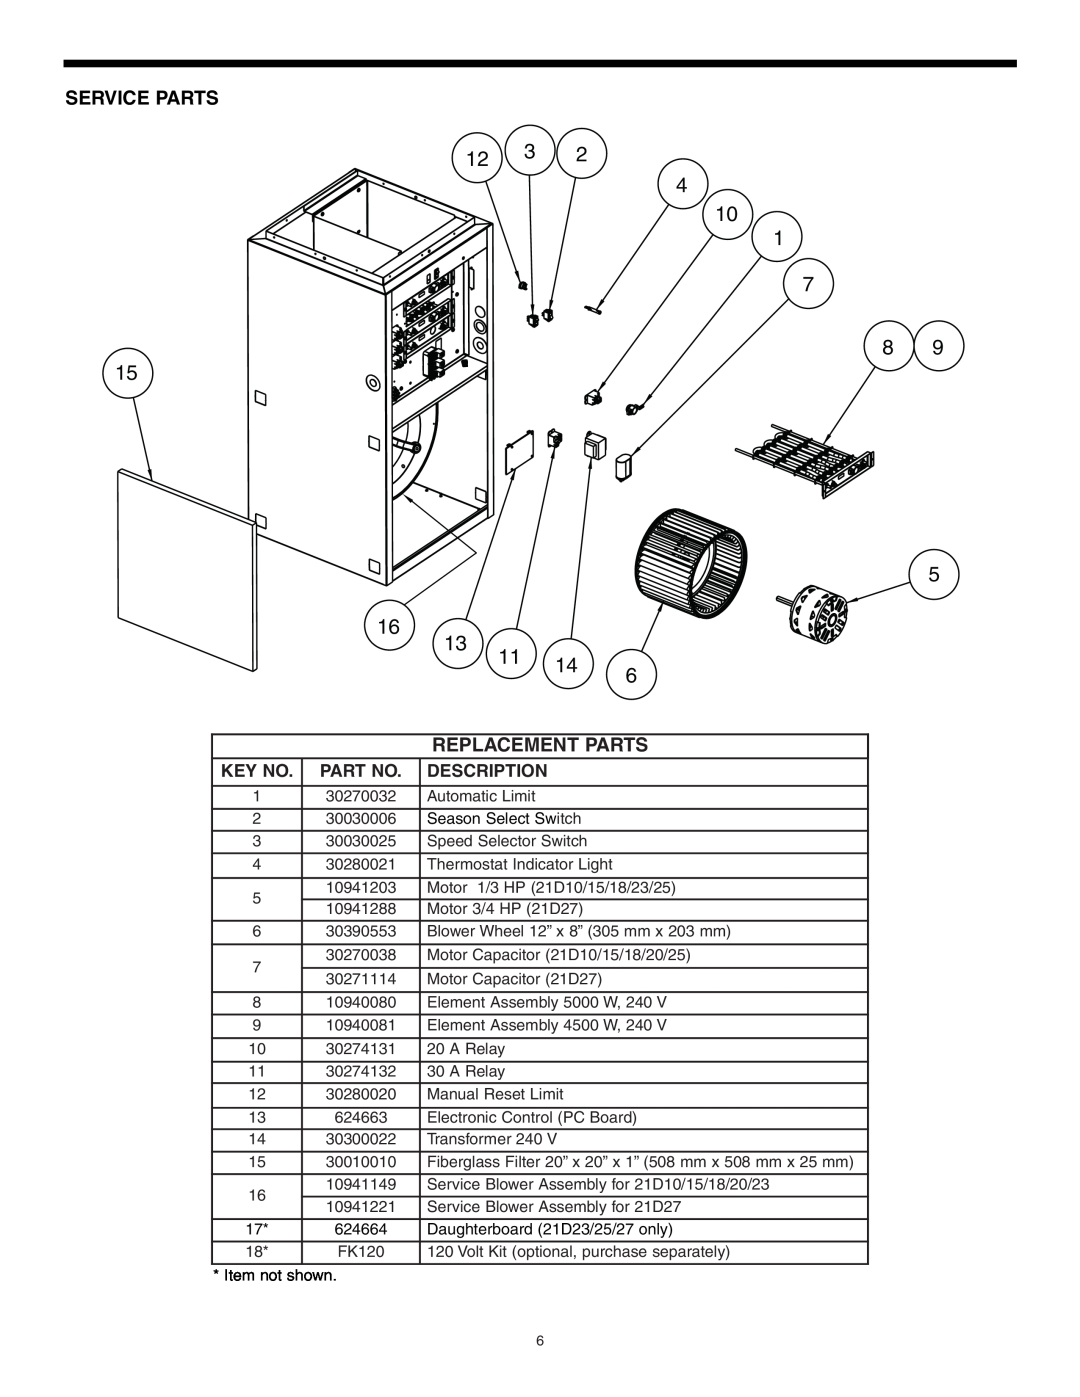 Broan 30042432A, D SERIES ELECTRIC FURNACE warranty Service Parts, Replacement Parts, 12 3 4 10, Description 